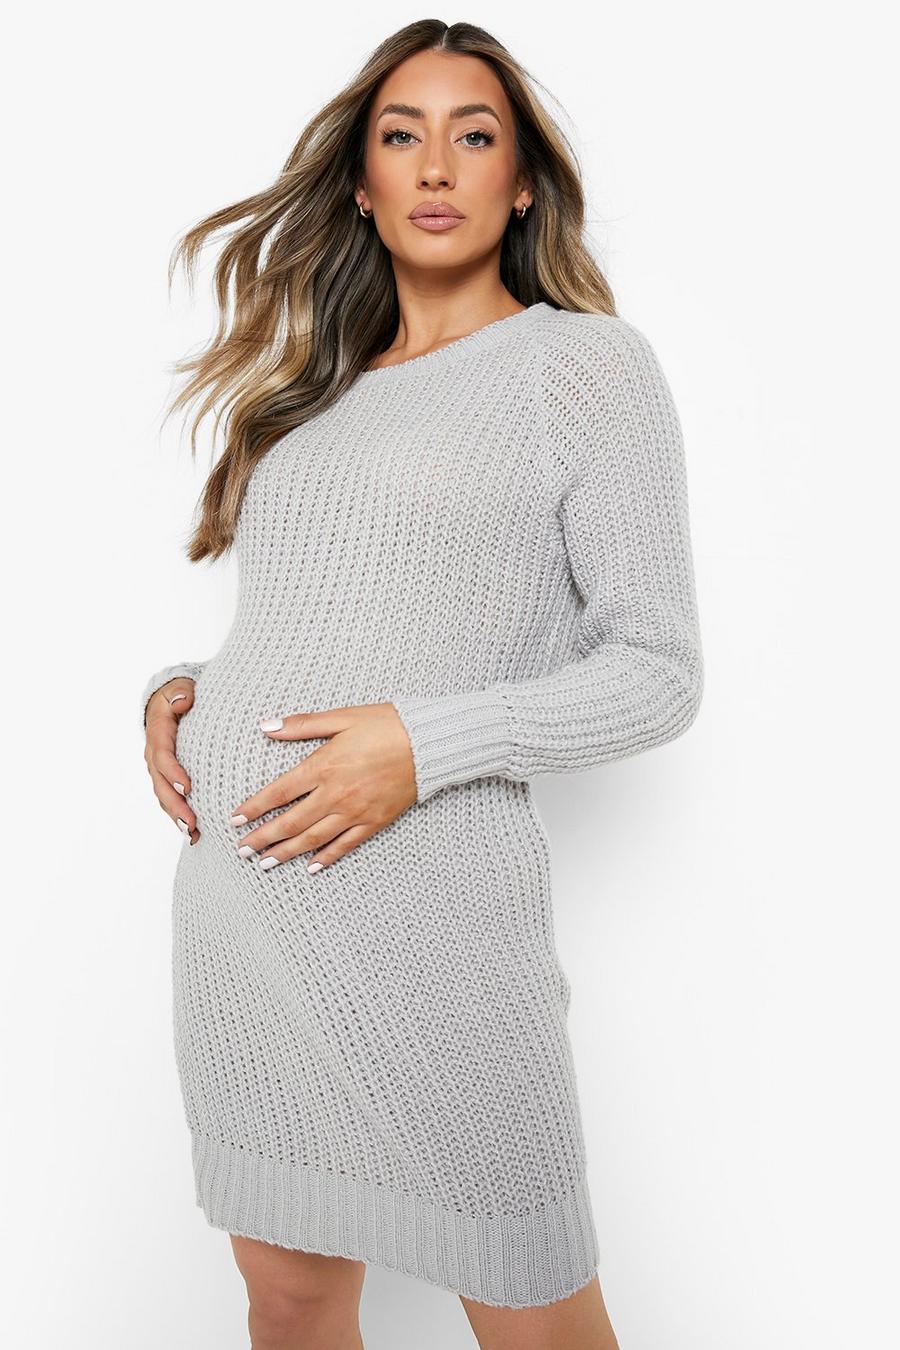 Mailles et manteaux de grossesse : vêtement de maternité